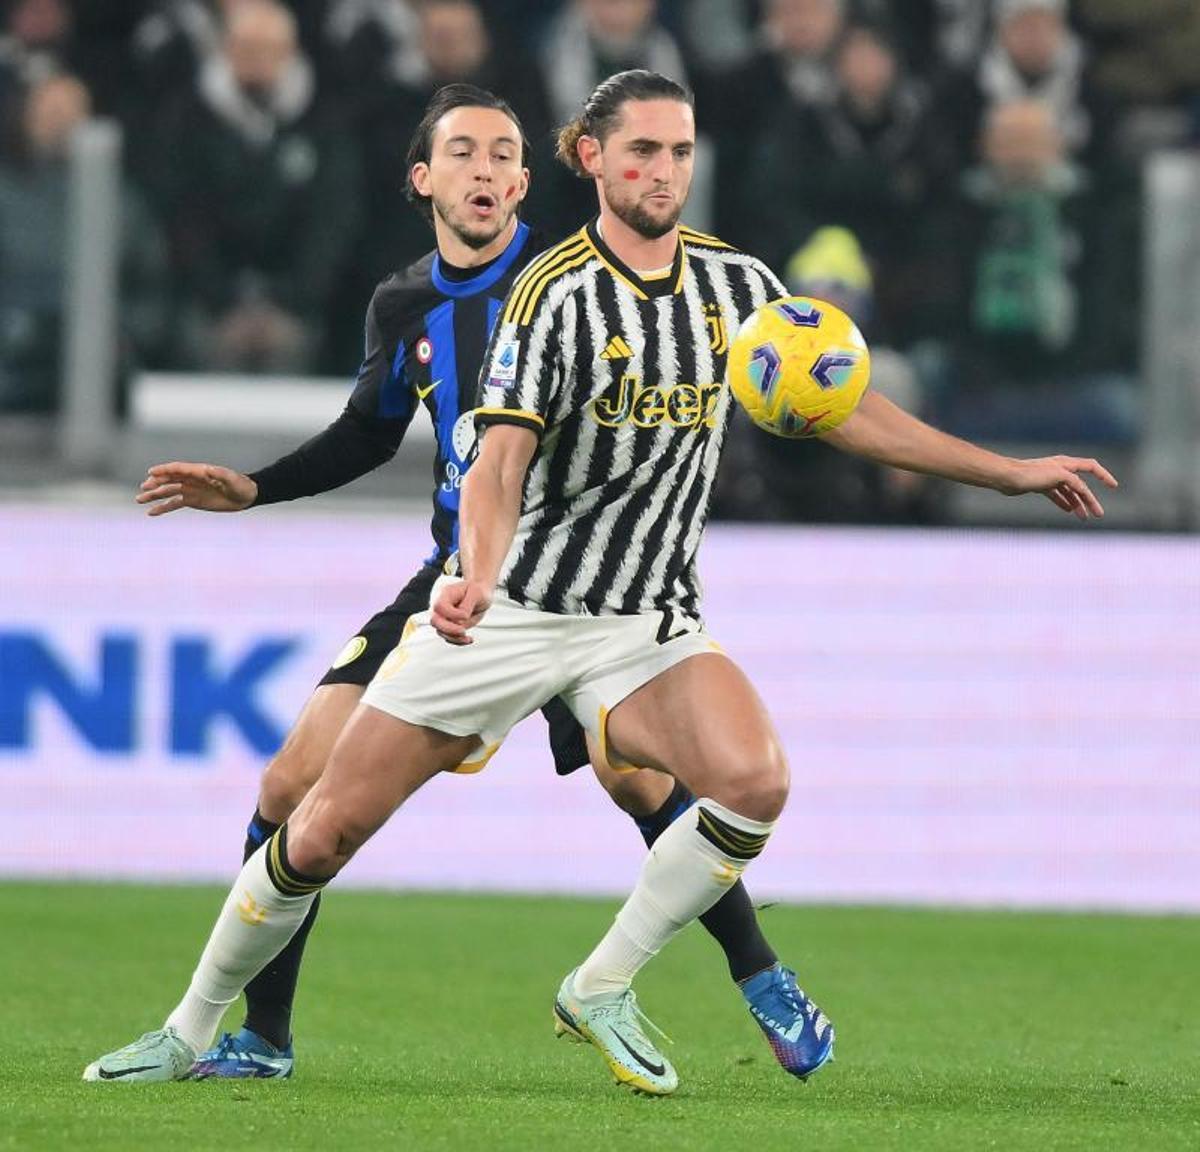 Adrien Rabiot - Mediocentro - Juventus - 40 millones